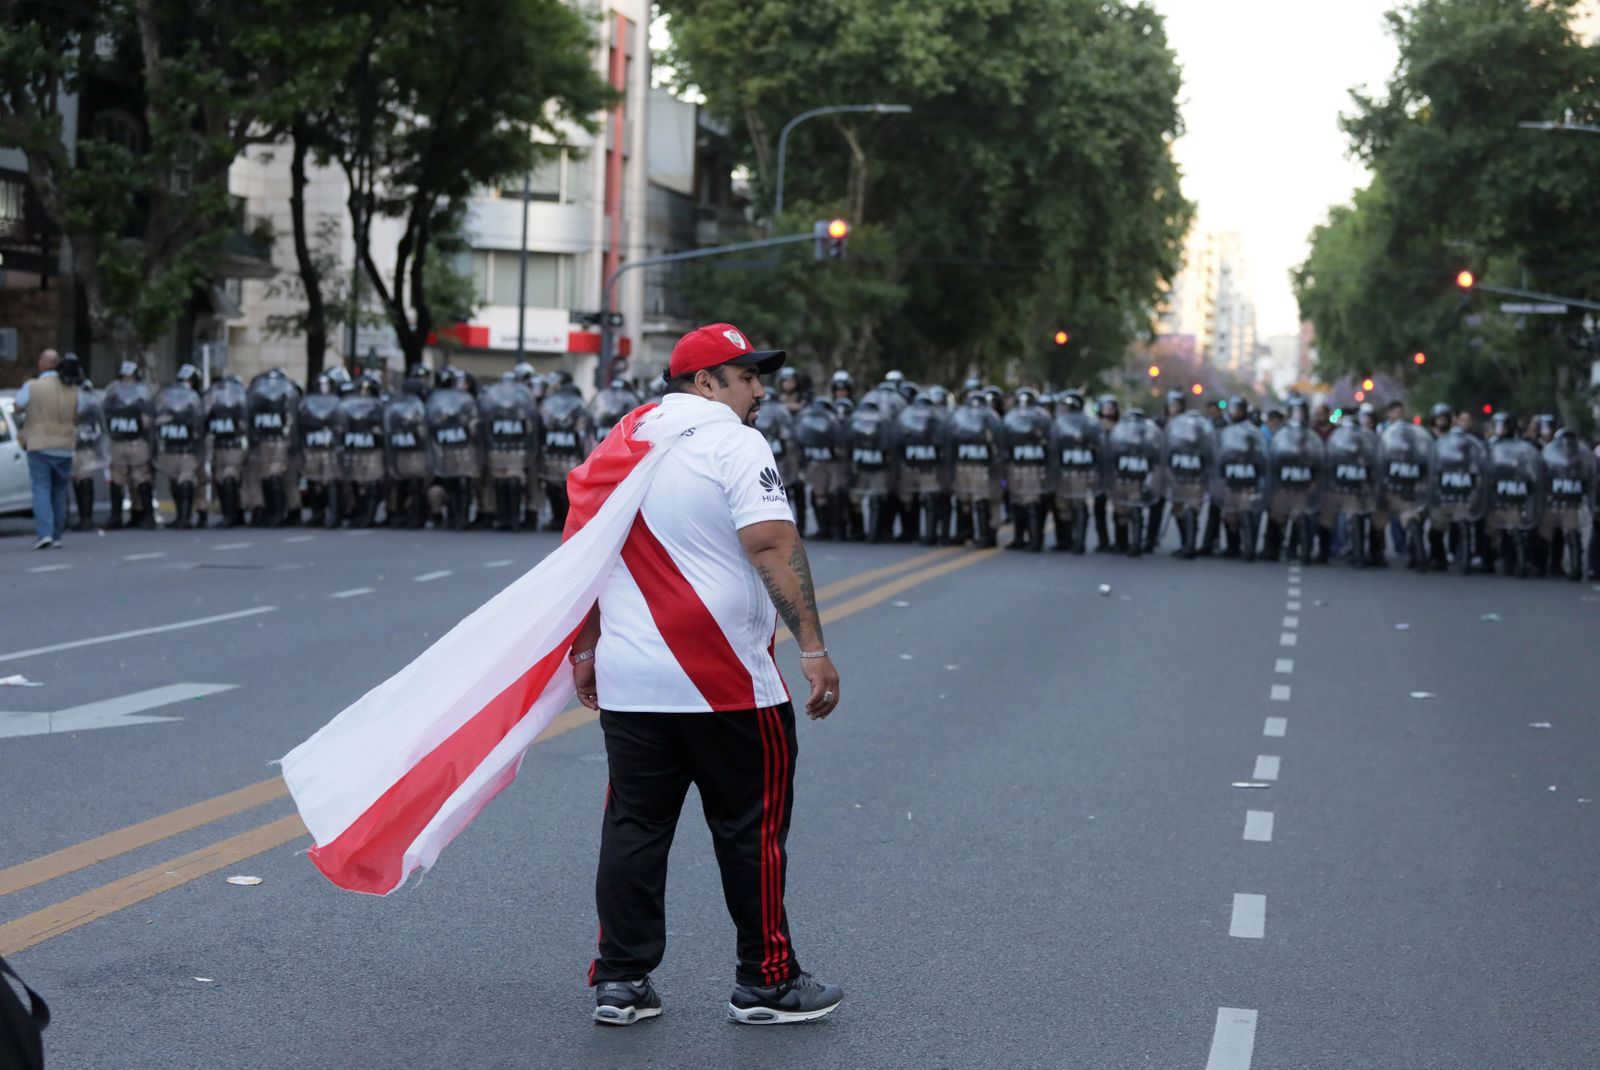 fotbal. Pohár osvoboditelů 2018, Boca Juniors - River Plate, fanoušek River Plate před kordonem policistů